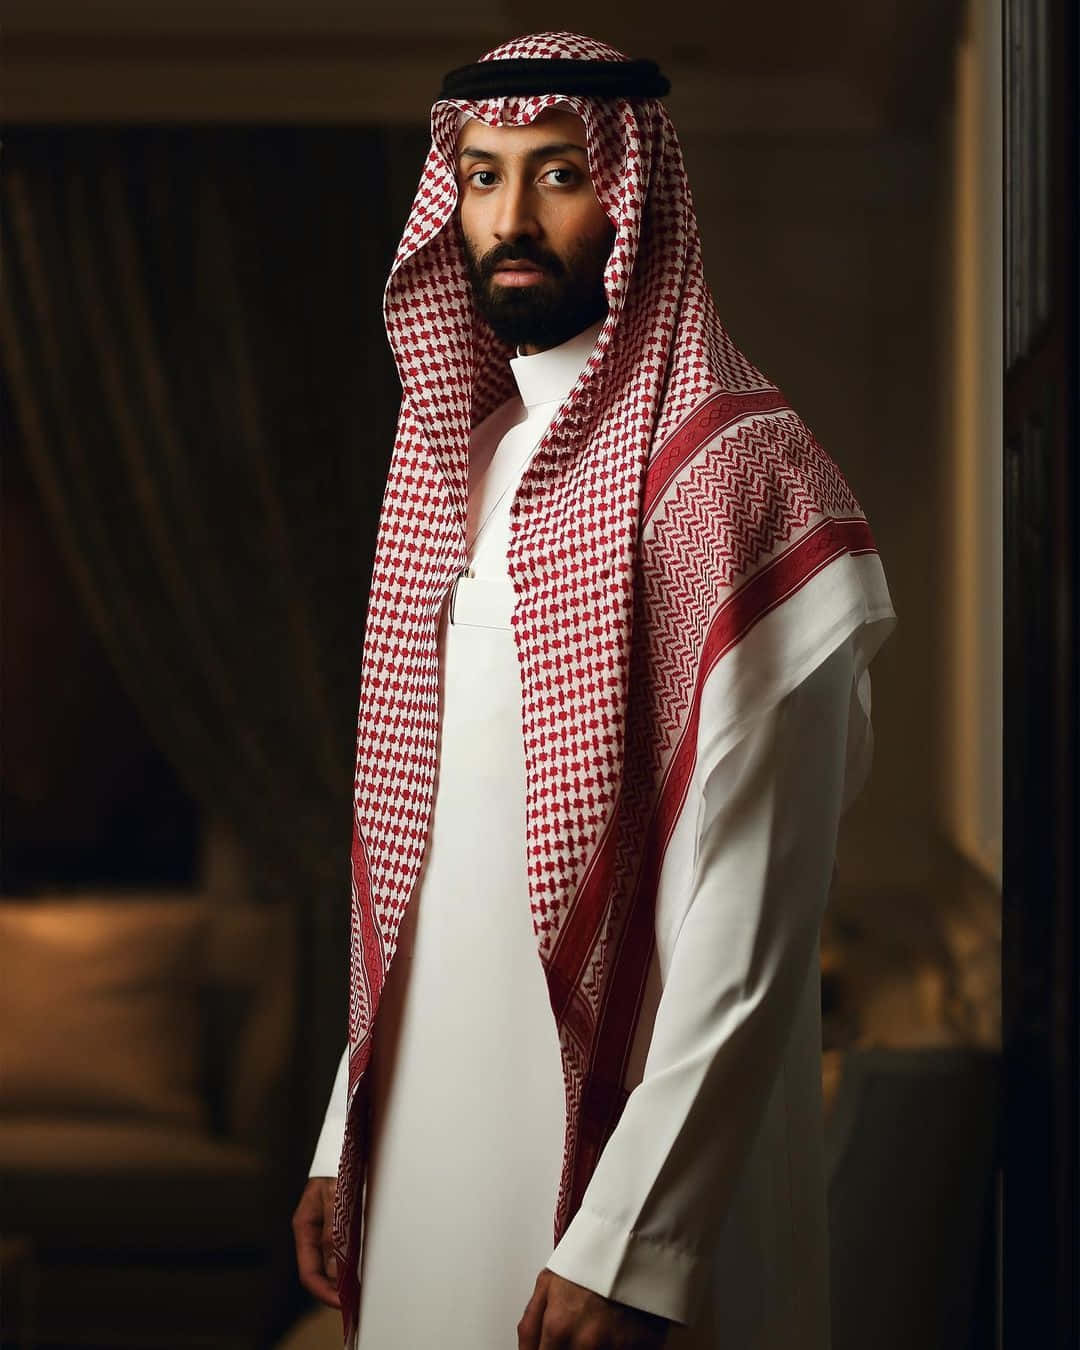 Arab Man Inside The Bedroom Wallpaper